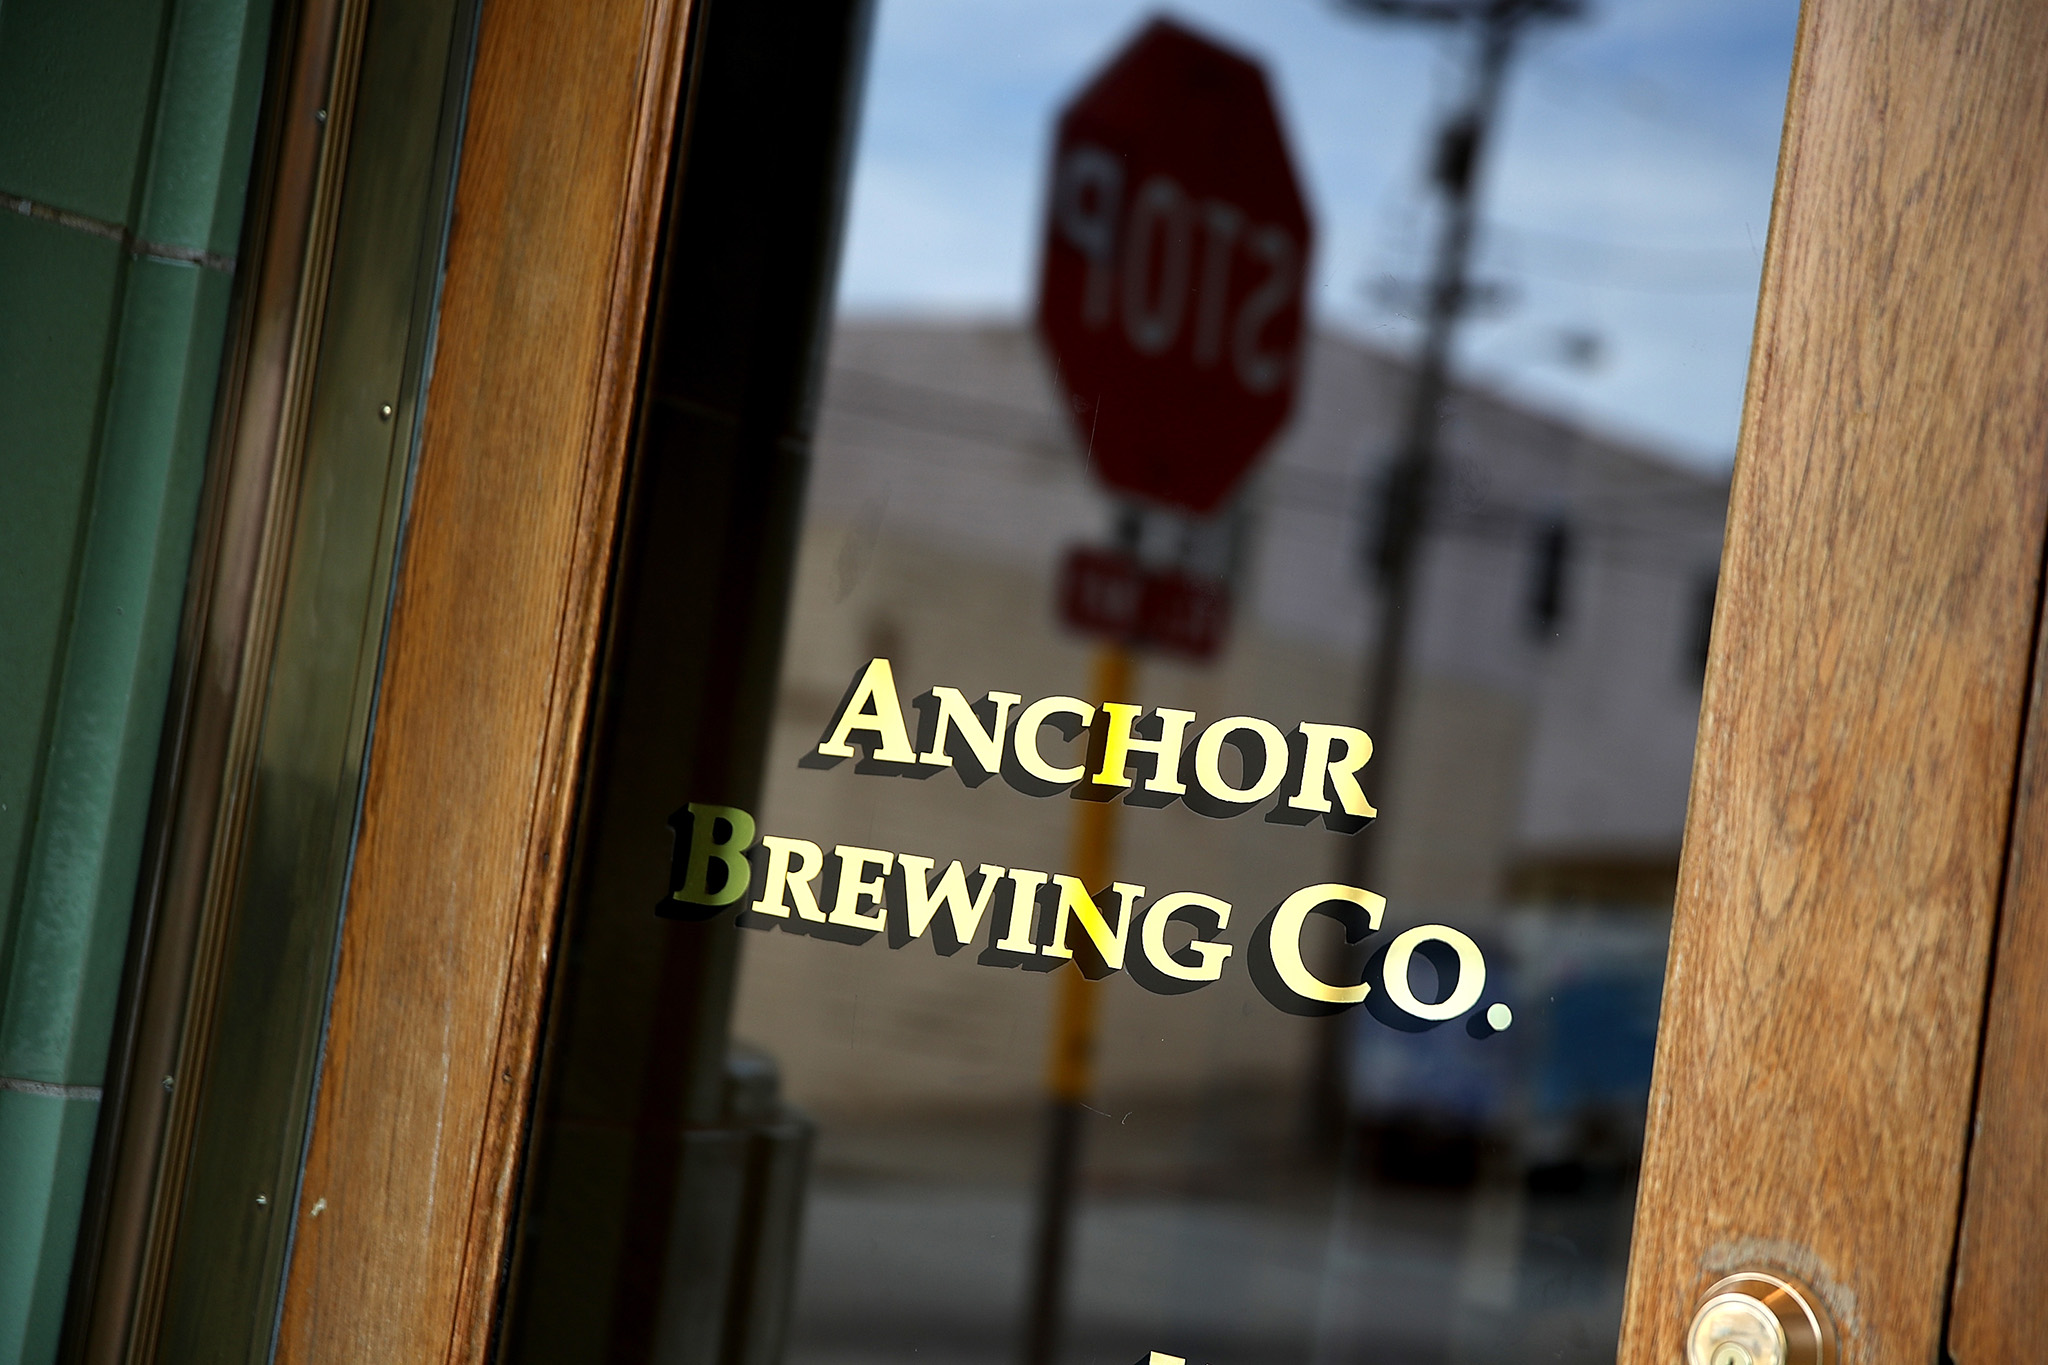 Anchor Brewing Company de San Francisco dice que ha cesado sus operaciones